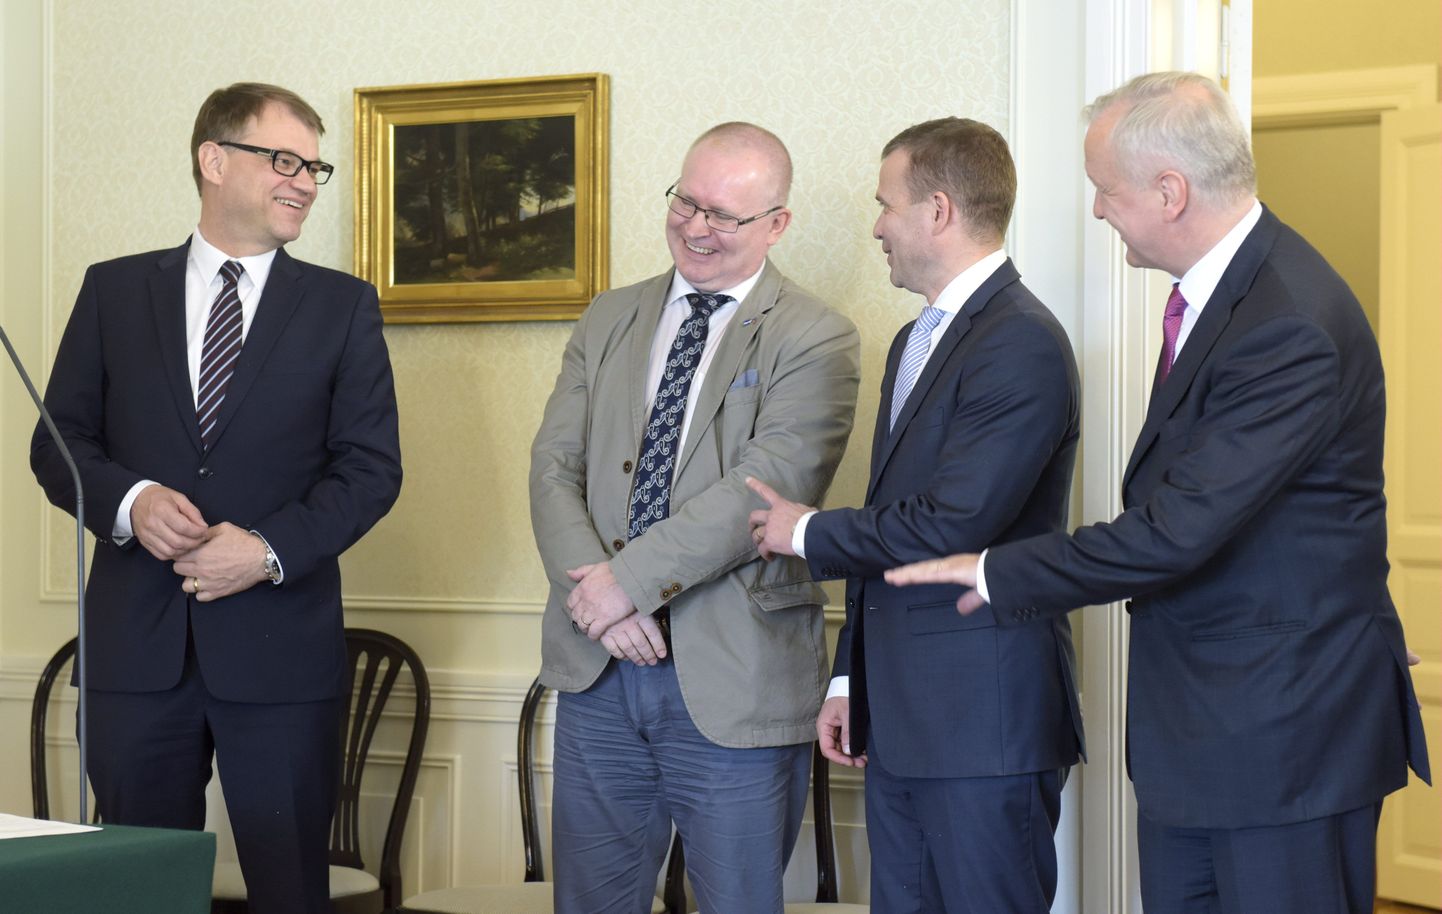 Soome valitsus eesotsas peaminister Juha Sipiläga (vasakul) allkirjastas 14. juunil pikalt läbi räägitud reformipaketi, mis peaks aitama Soome majanduse tagasi kasvurajale.